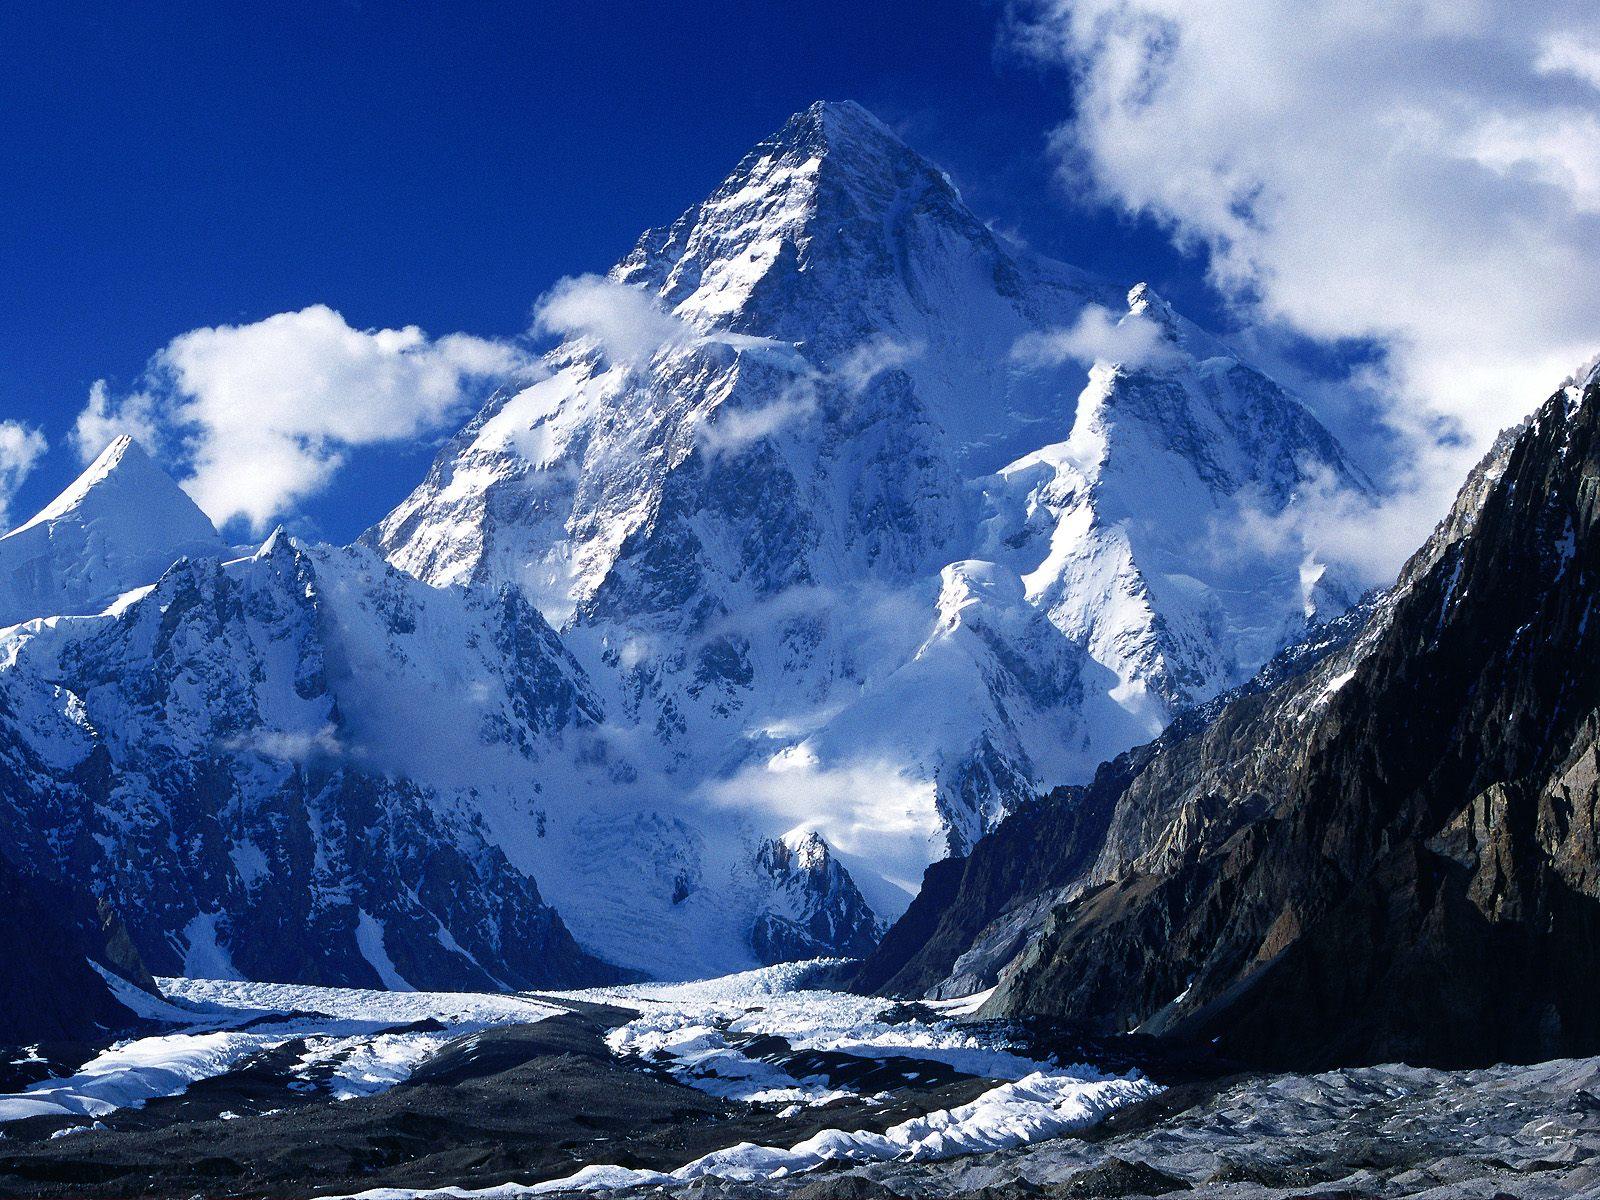 la-meca-del-trekking-pakistan-k2-baltoro-gondogoro-1-241.jpg